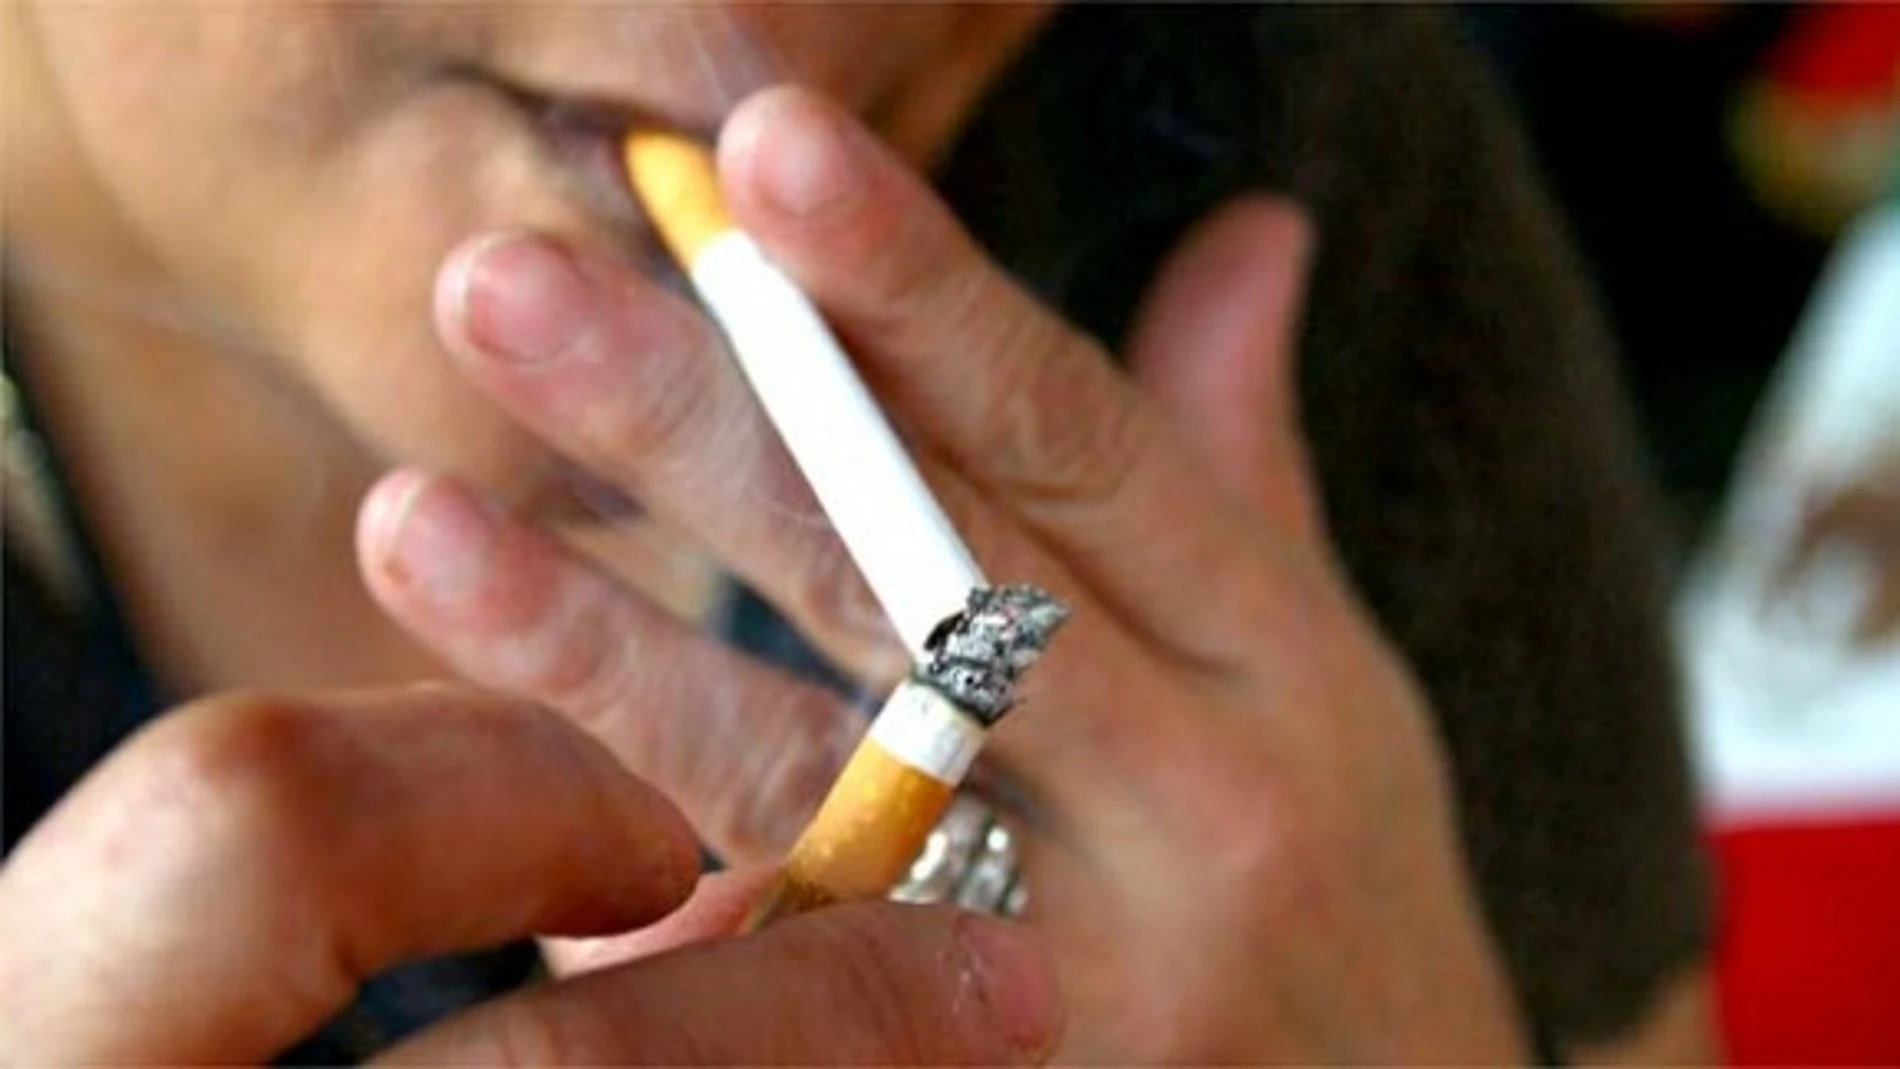 Una persona encendiéndose un cigarro